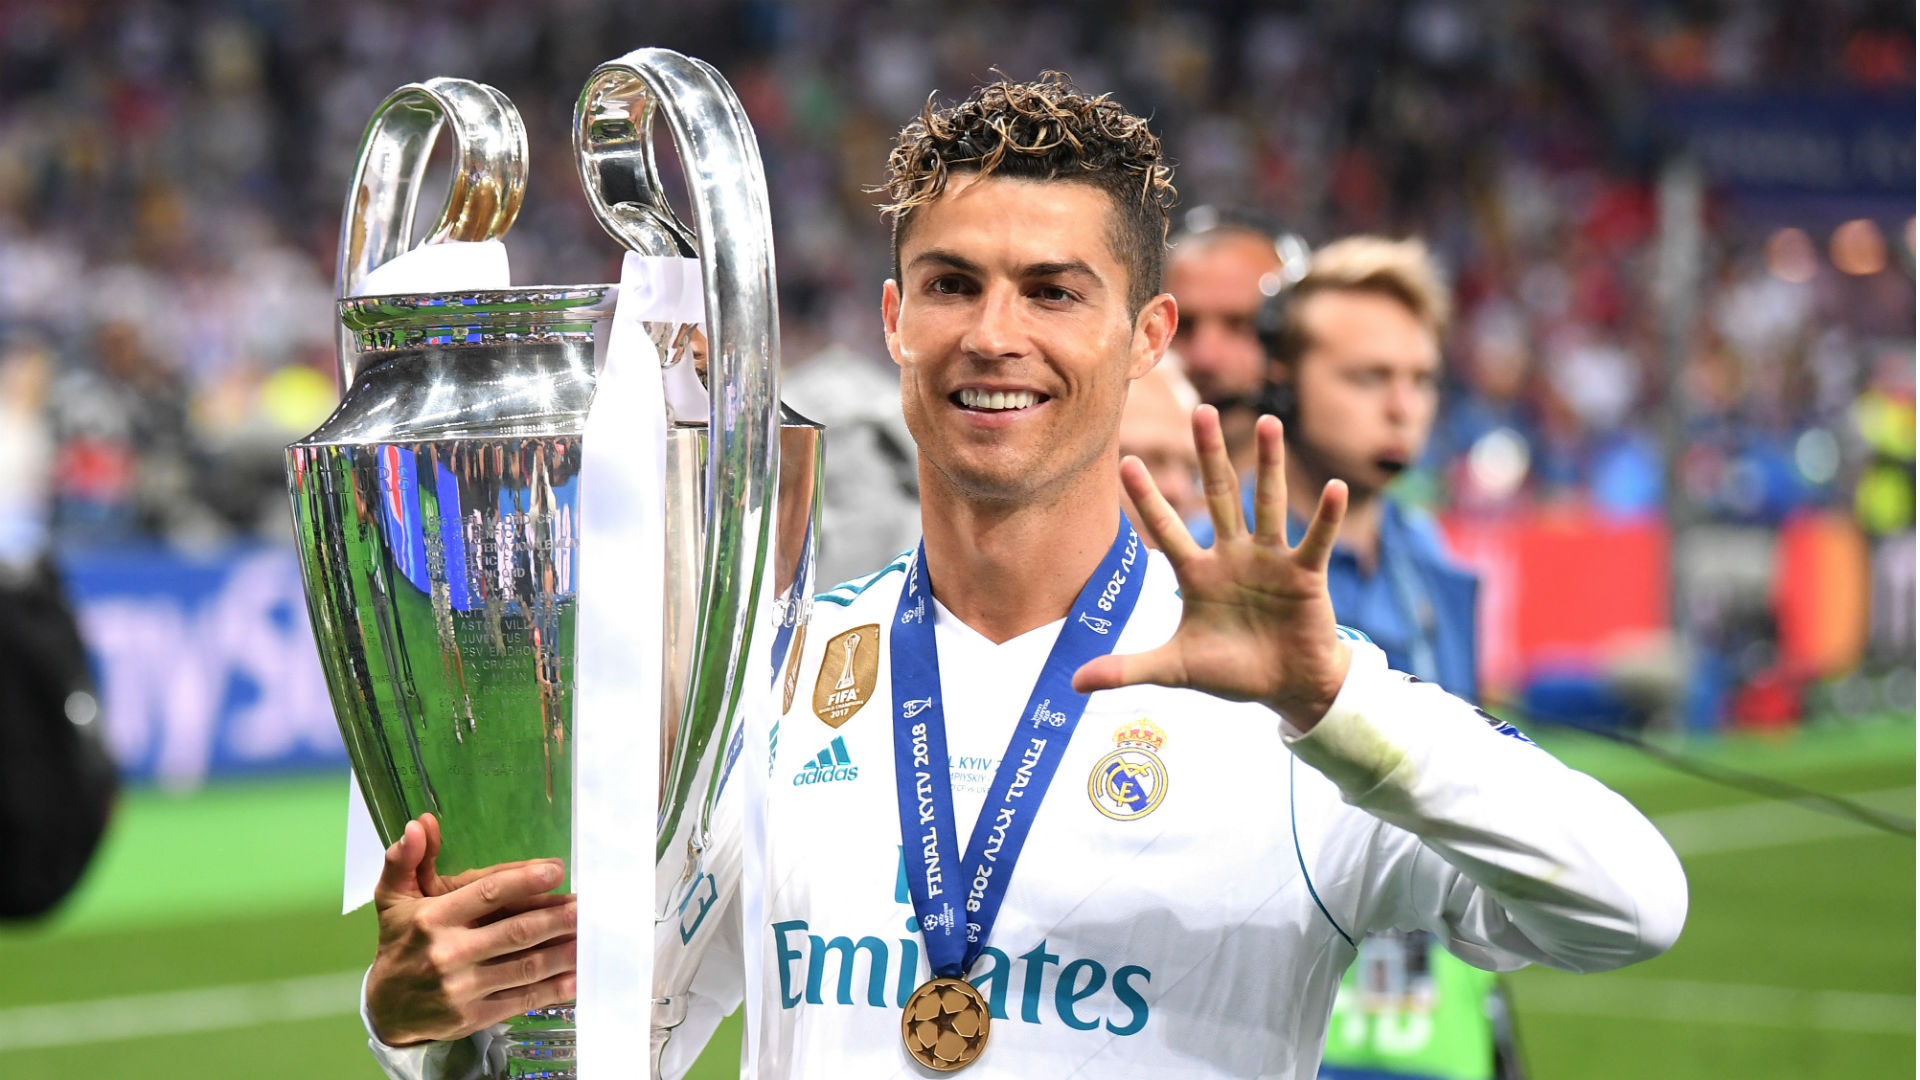 Không gì tuyệt vời hơn khi lựa chọn đội hình Real Madrid Ronaldo làm hình nền cho máy tính của bạn. Với những cái tên siêu sao đang sánh vai nhau, đội bóng đang chinh phục tất cả với sự phối hợp tuyệt vời và kỹ thuật hoàn mỹ. Bạn chắc chắn sẽ thích thú khi được làm quen với những người anh hùng trên sân cỏ thông qua nền tảng này.